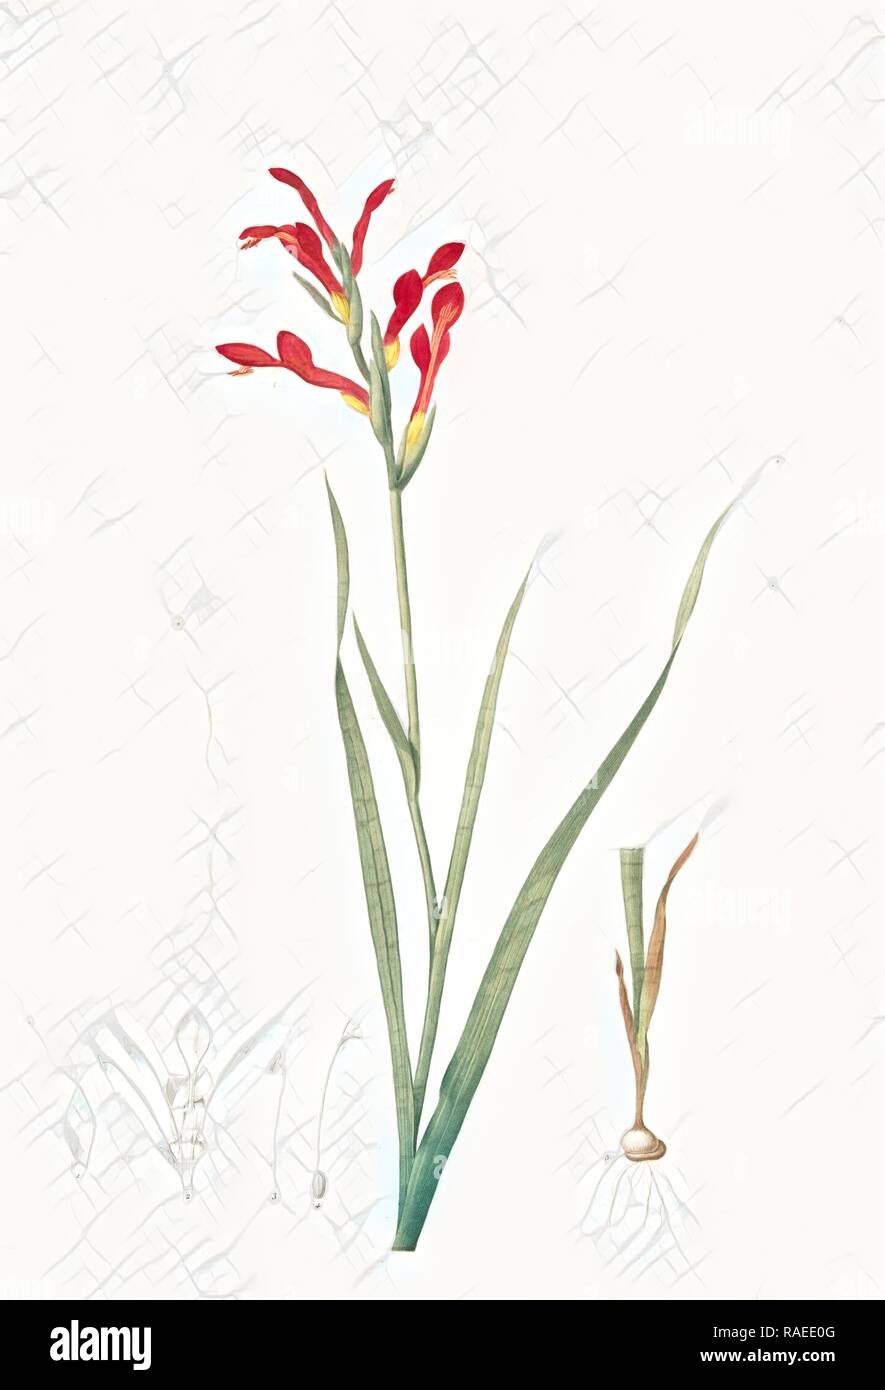 Antholyza cunonia, Antholyse papilionacée, Gladiolus, Sword Lily, Corn flag, Scarlet-flowered Antholyza, Redouté reimagined Stock Photo